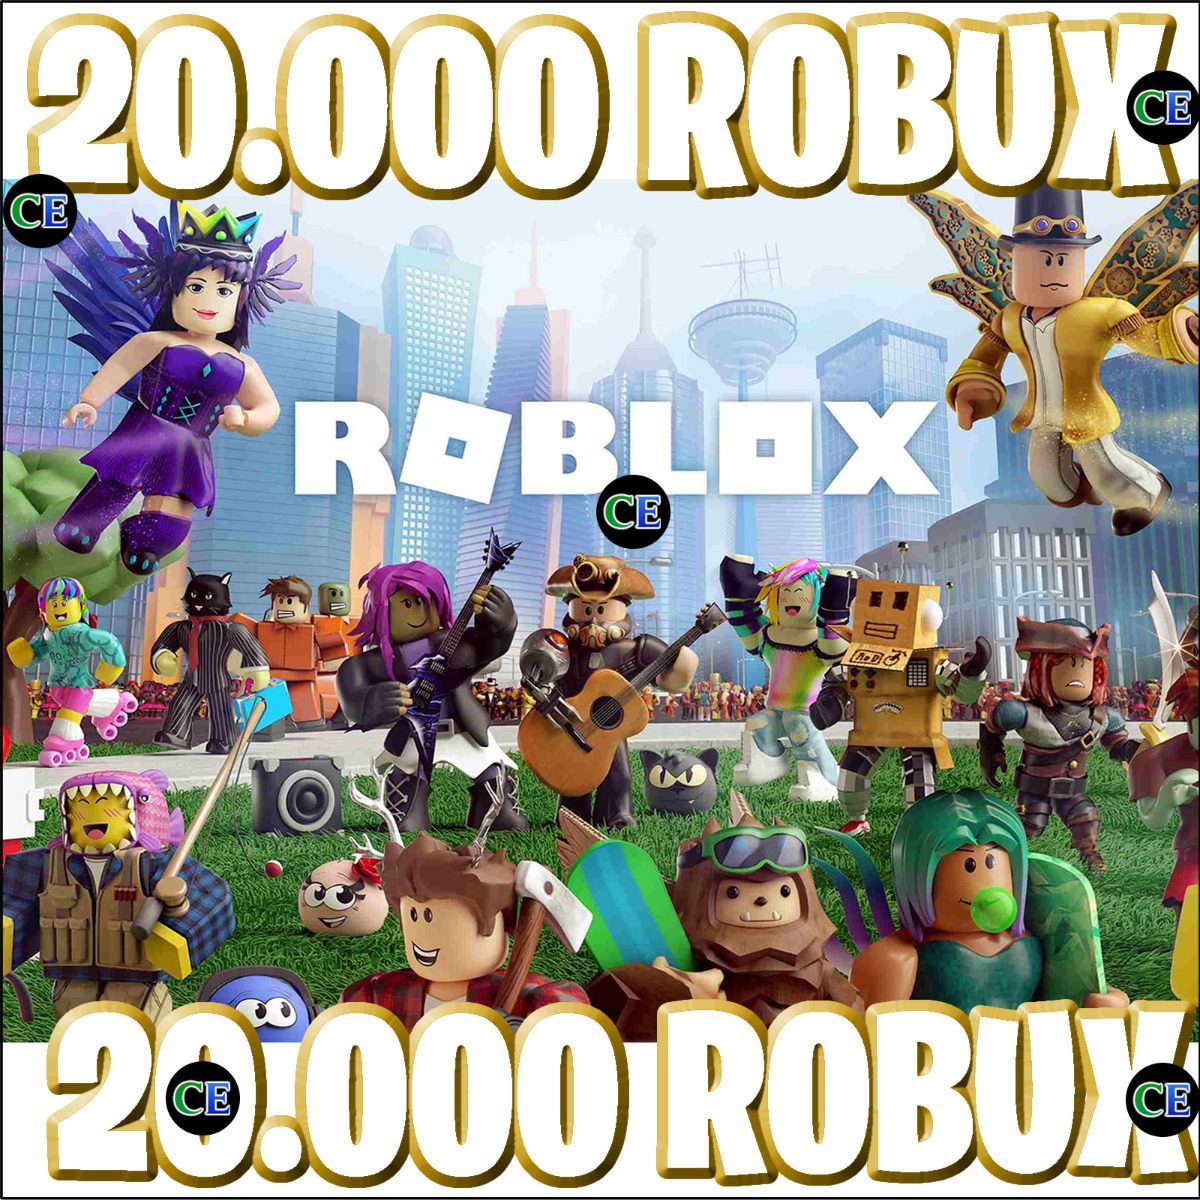 Roblox 22 500 Robux Entrega Inmediata 3 699 00 En Mercado - roblox ps3 compara precios en tiendas com